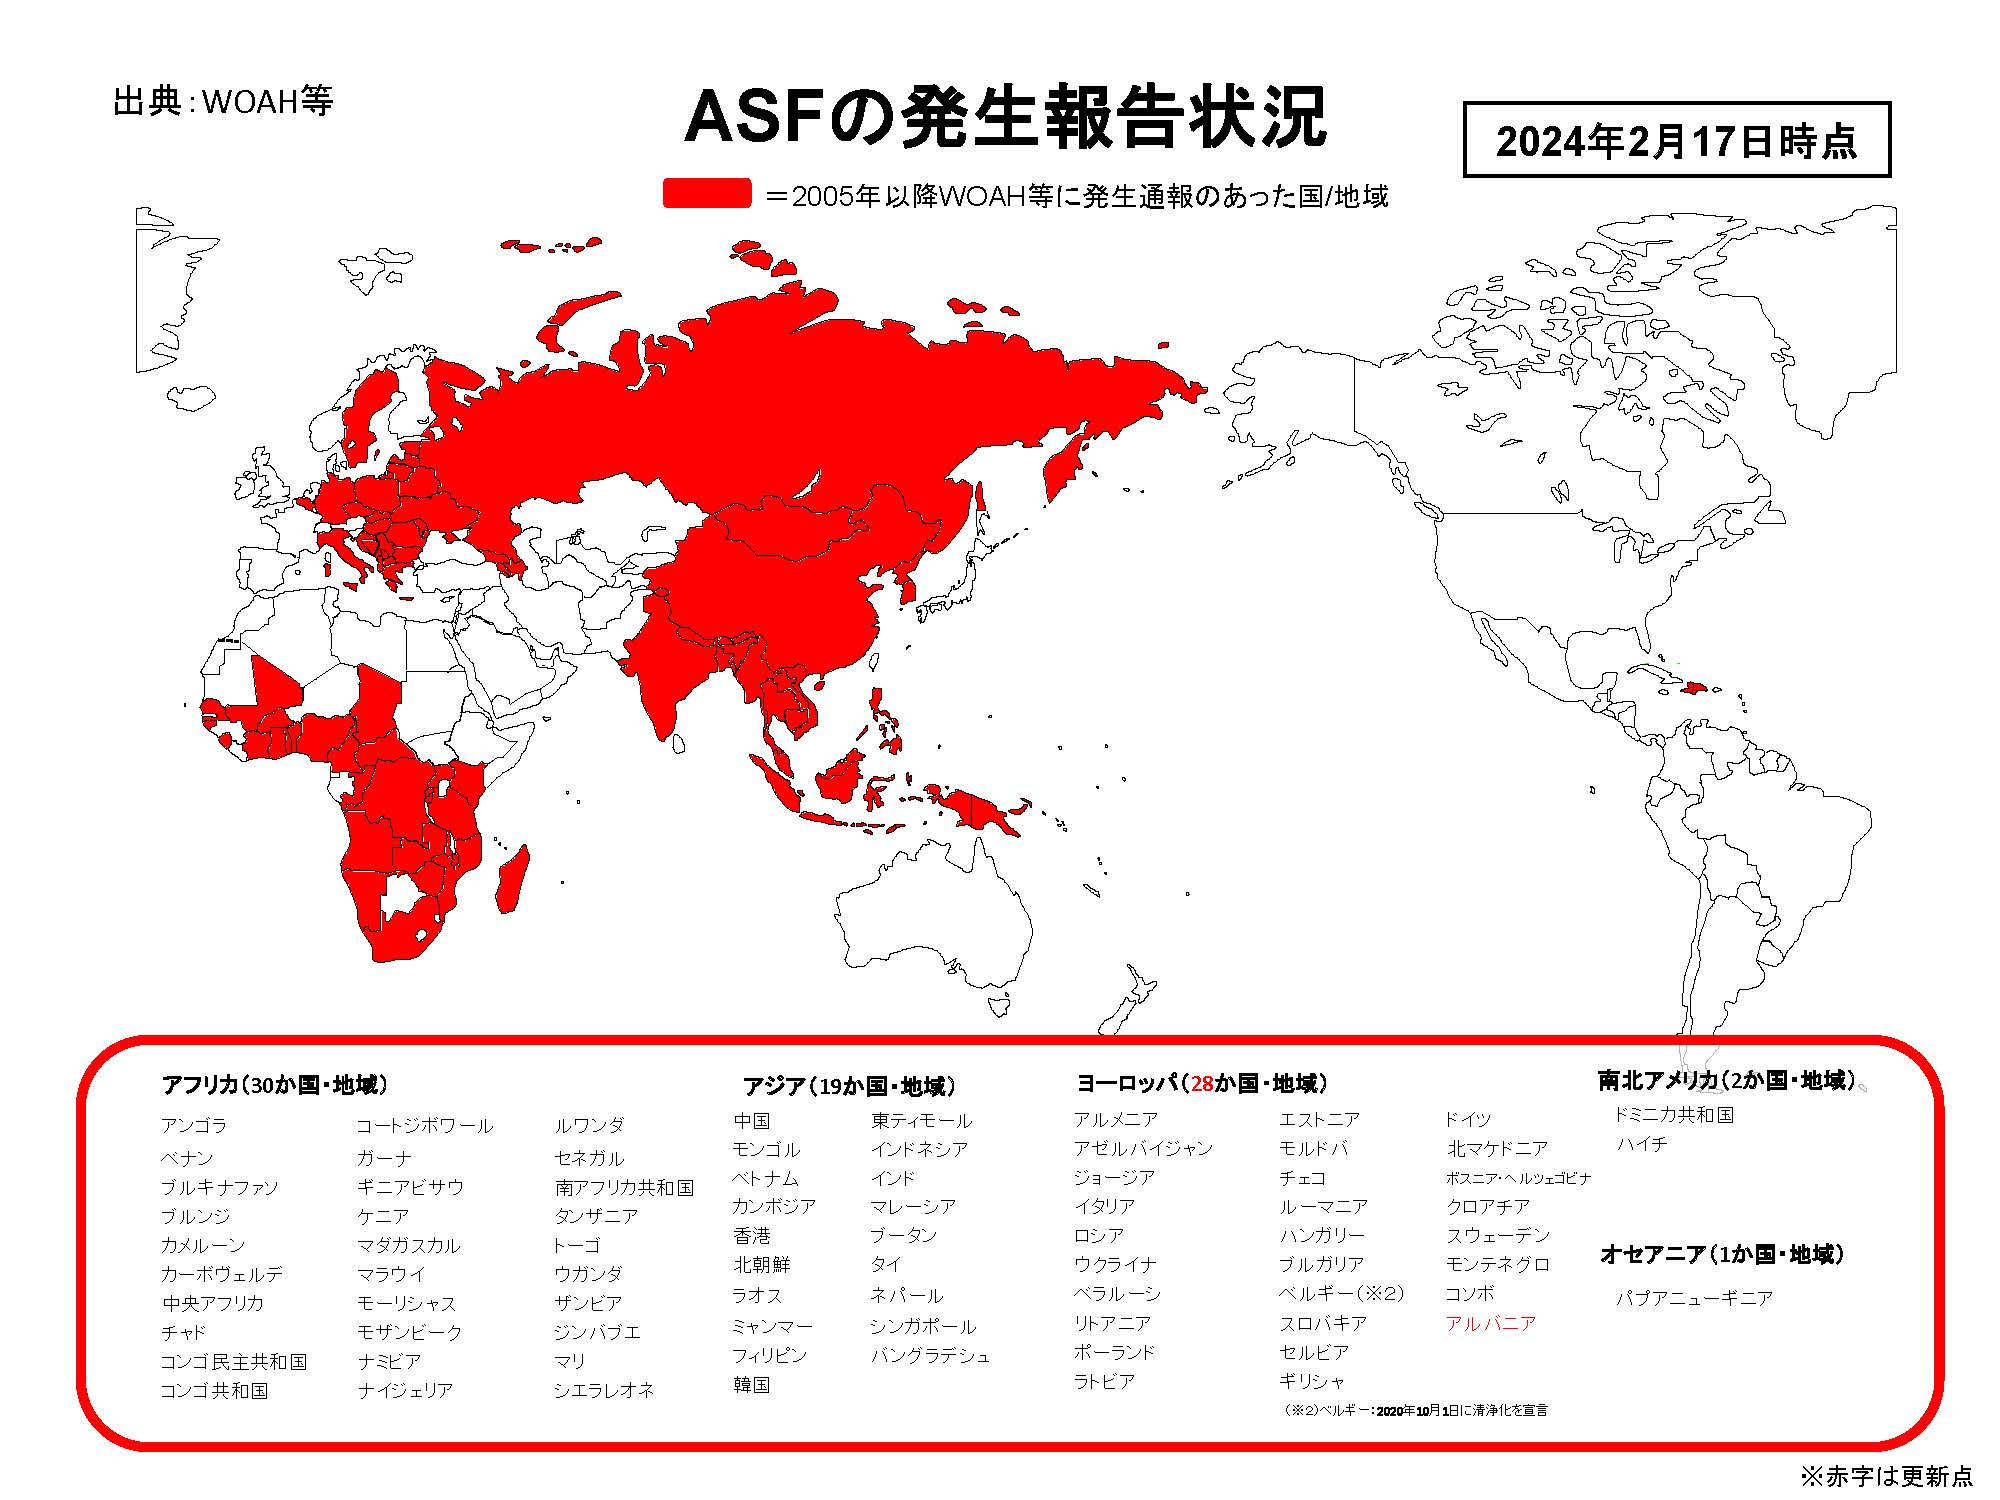 2024年2月17日現在のASFの発生状況を示した世界地図のイラスト（提供は農林水産省）